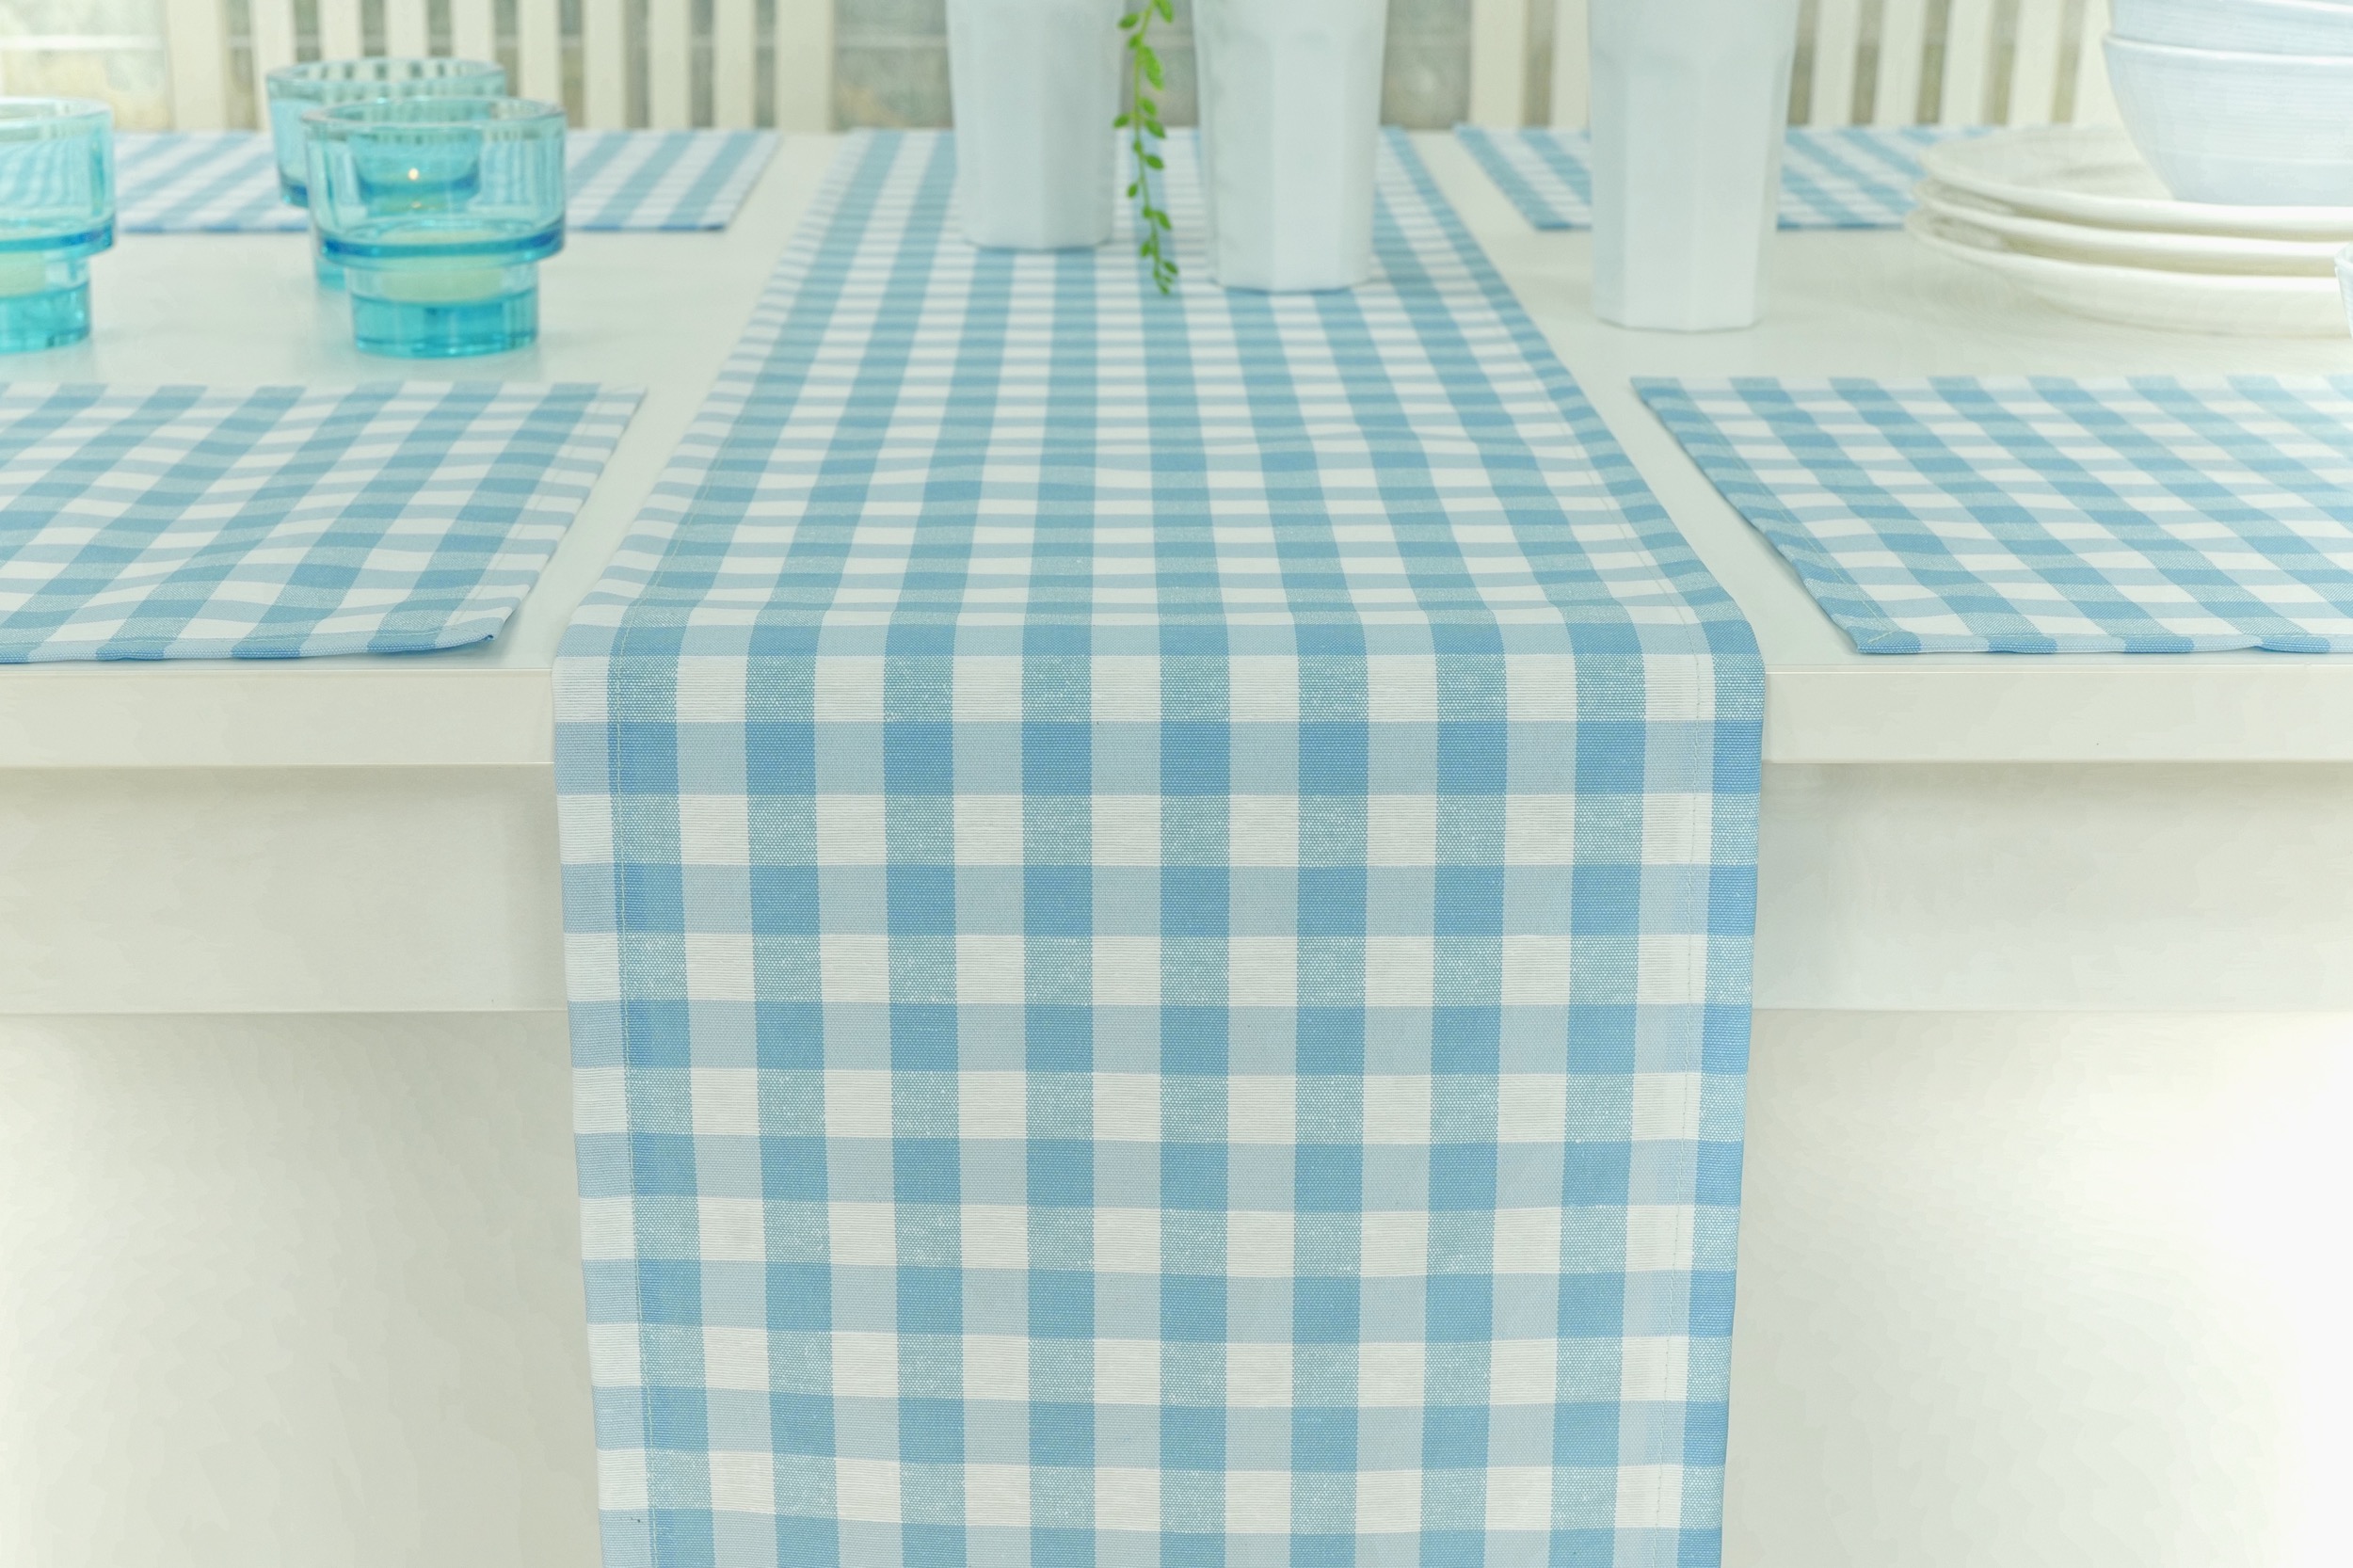 Blaue Tischläufer perfekt in Basic + gemustert | TiDeko®  Tischdecken-Shop.de. Tischdecken Markenqualität